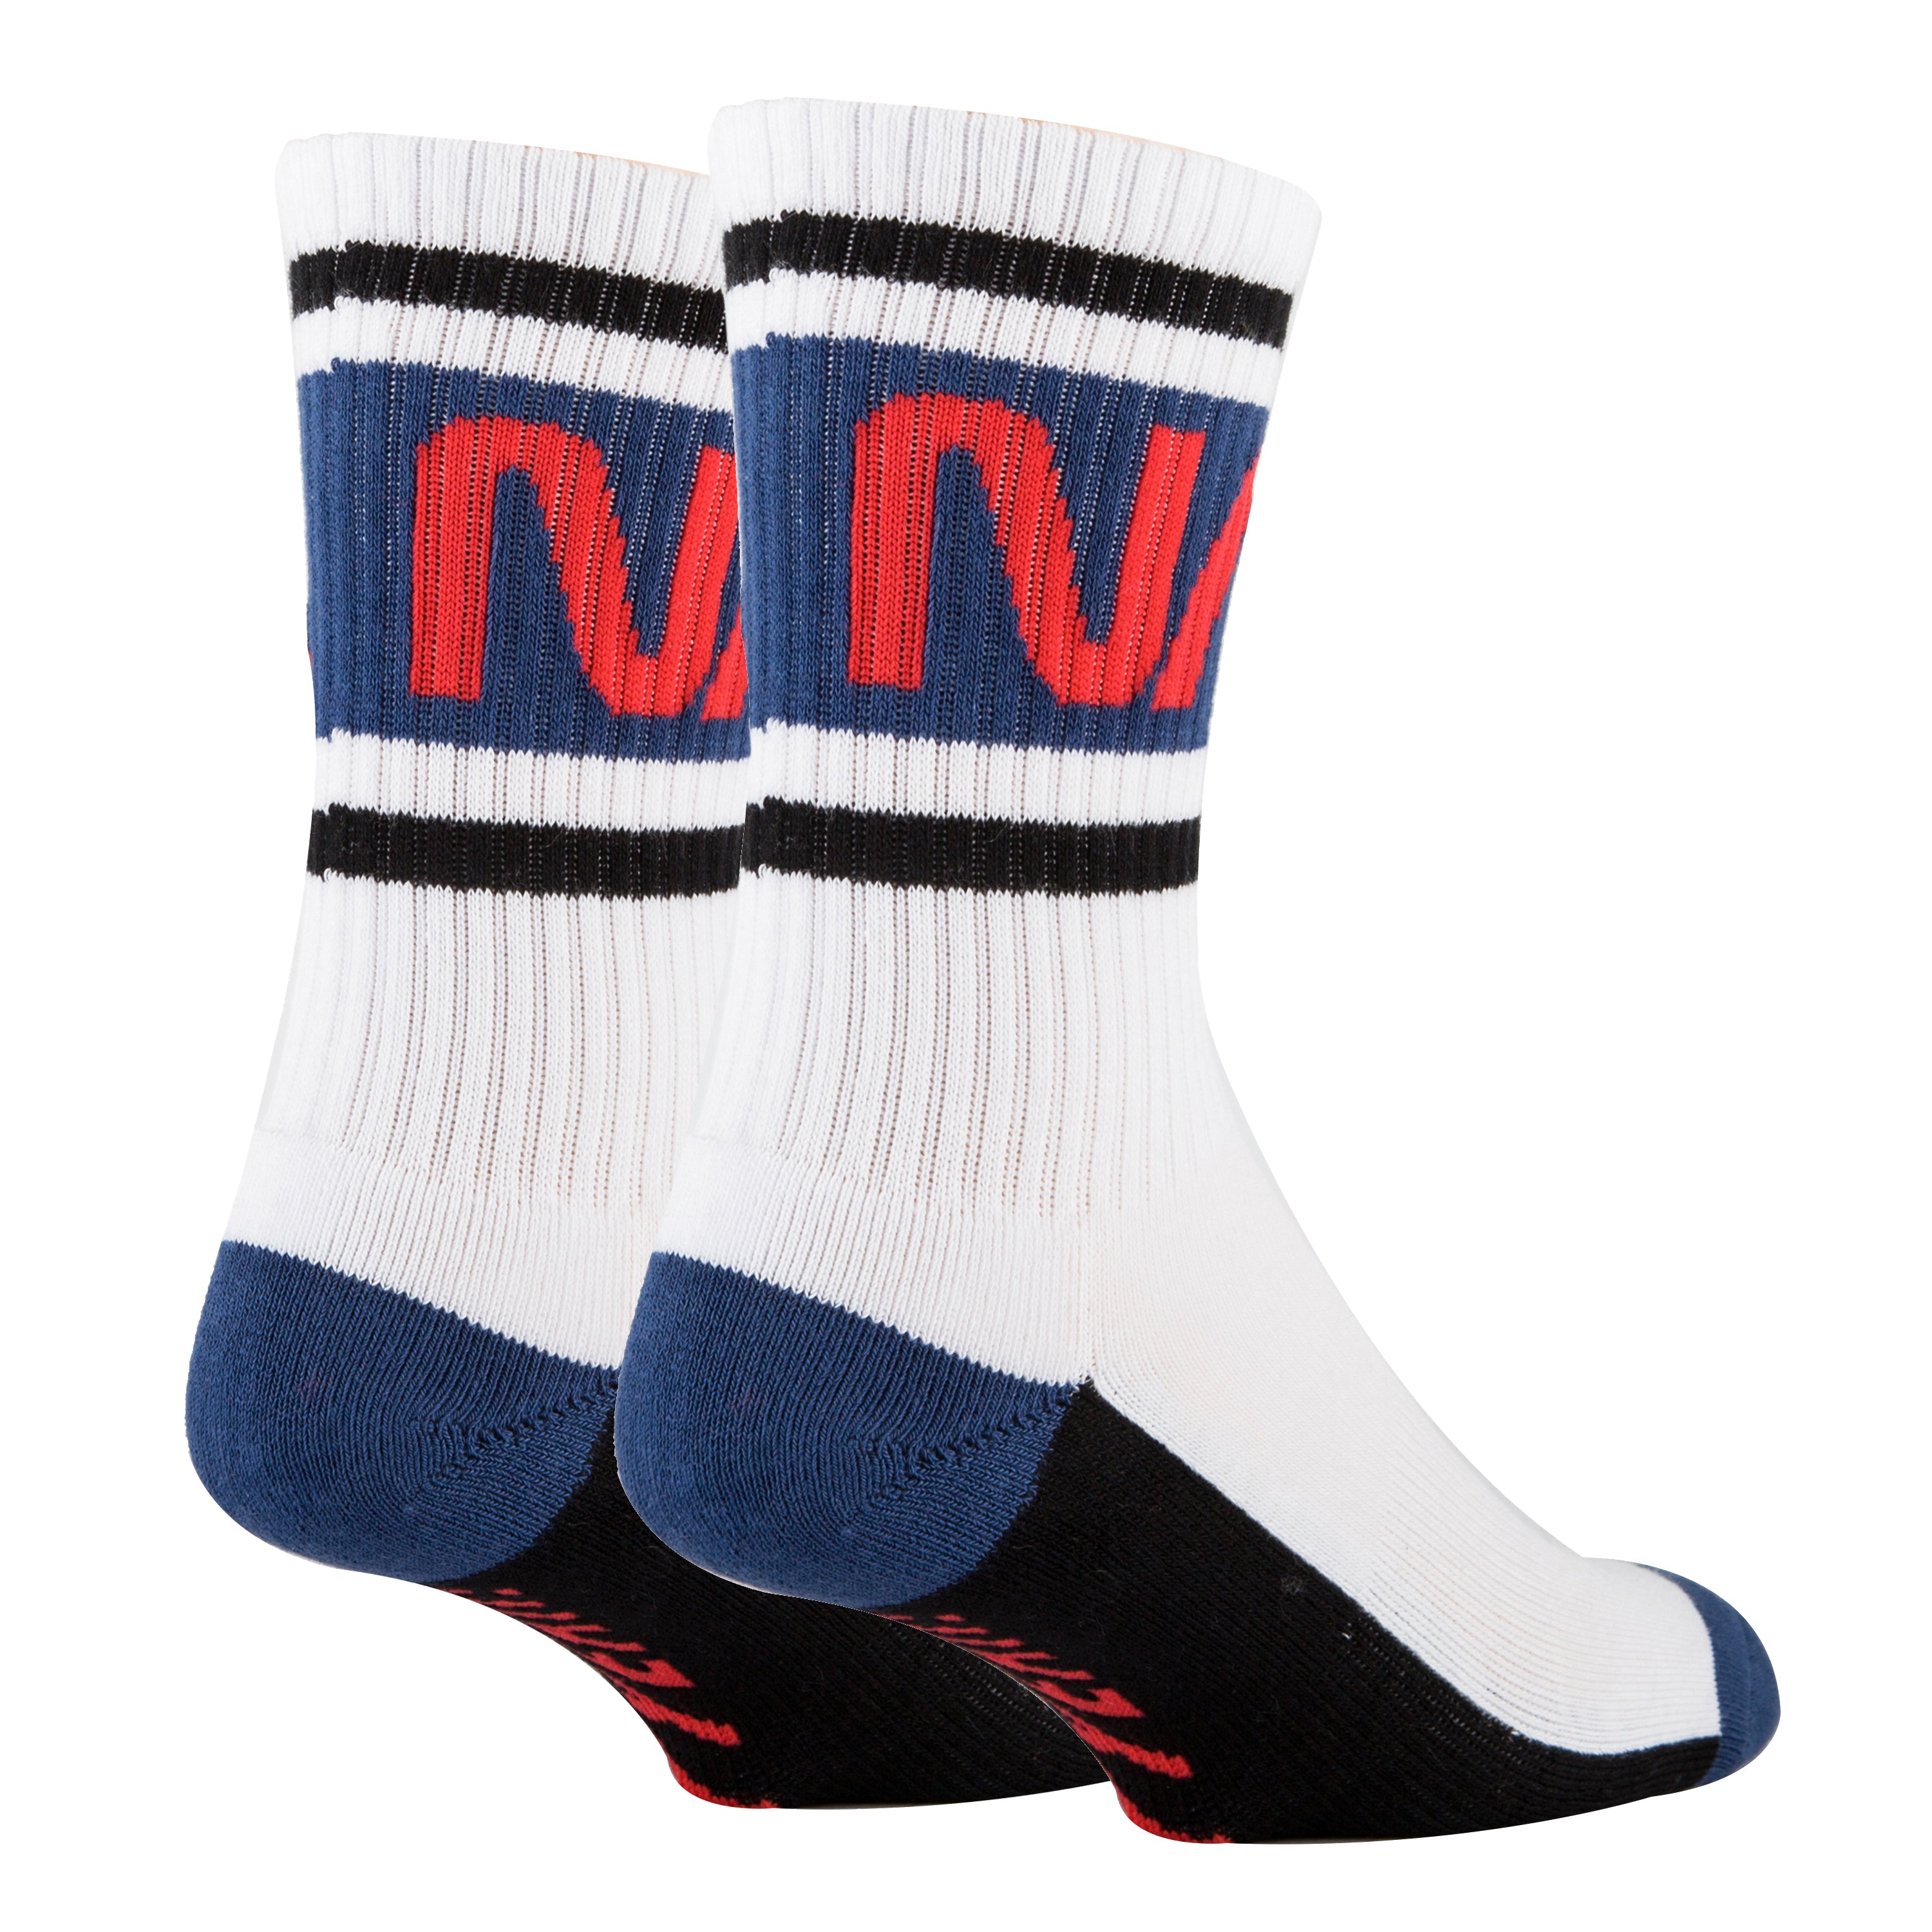 I AM NASA Athletic Socks | Novelty Socks for Kids